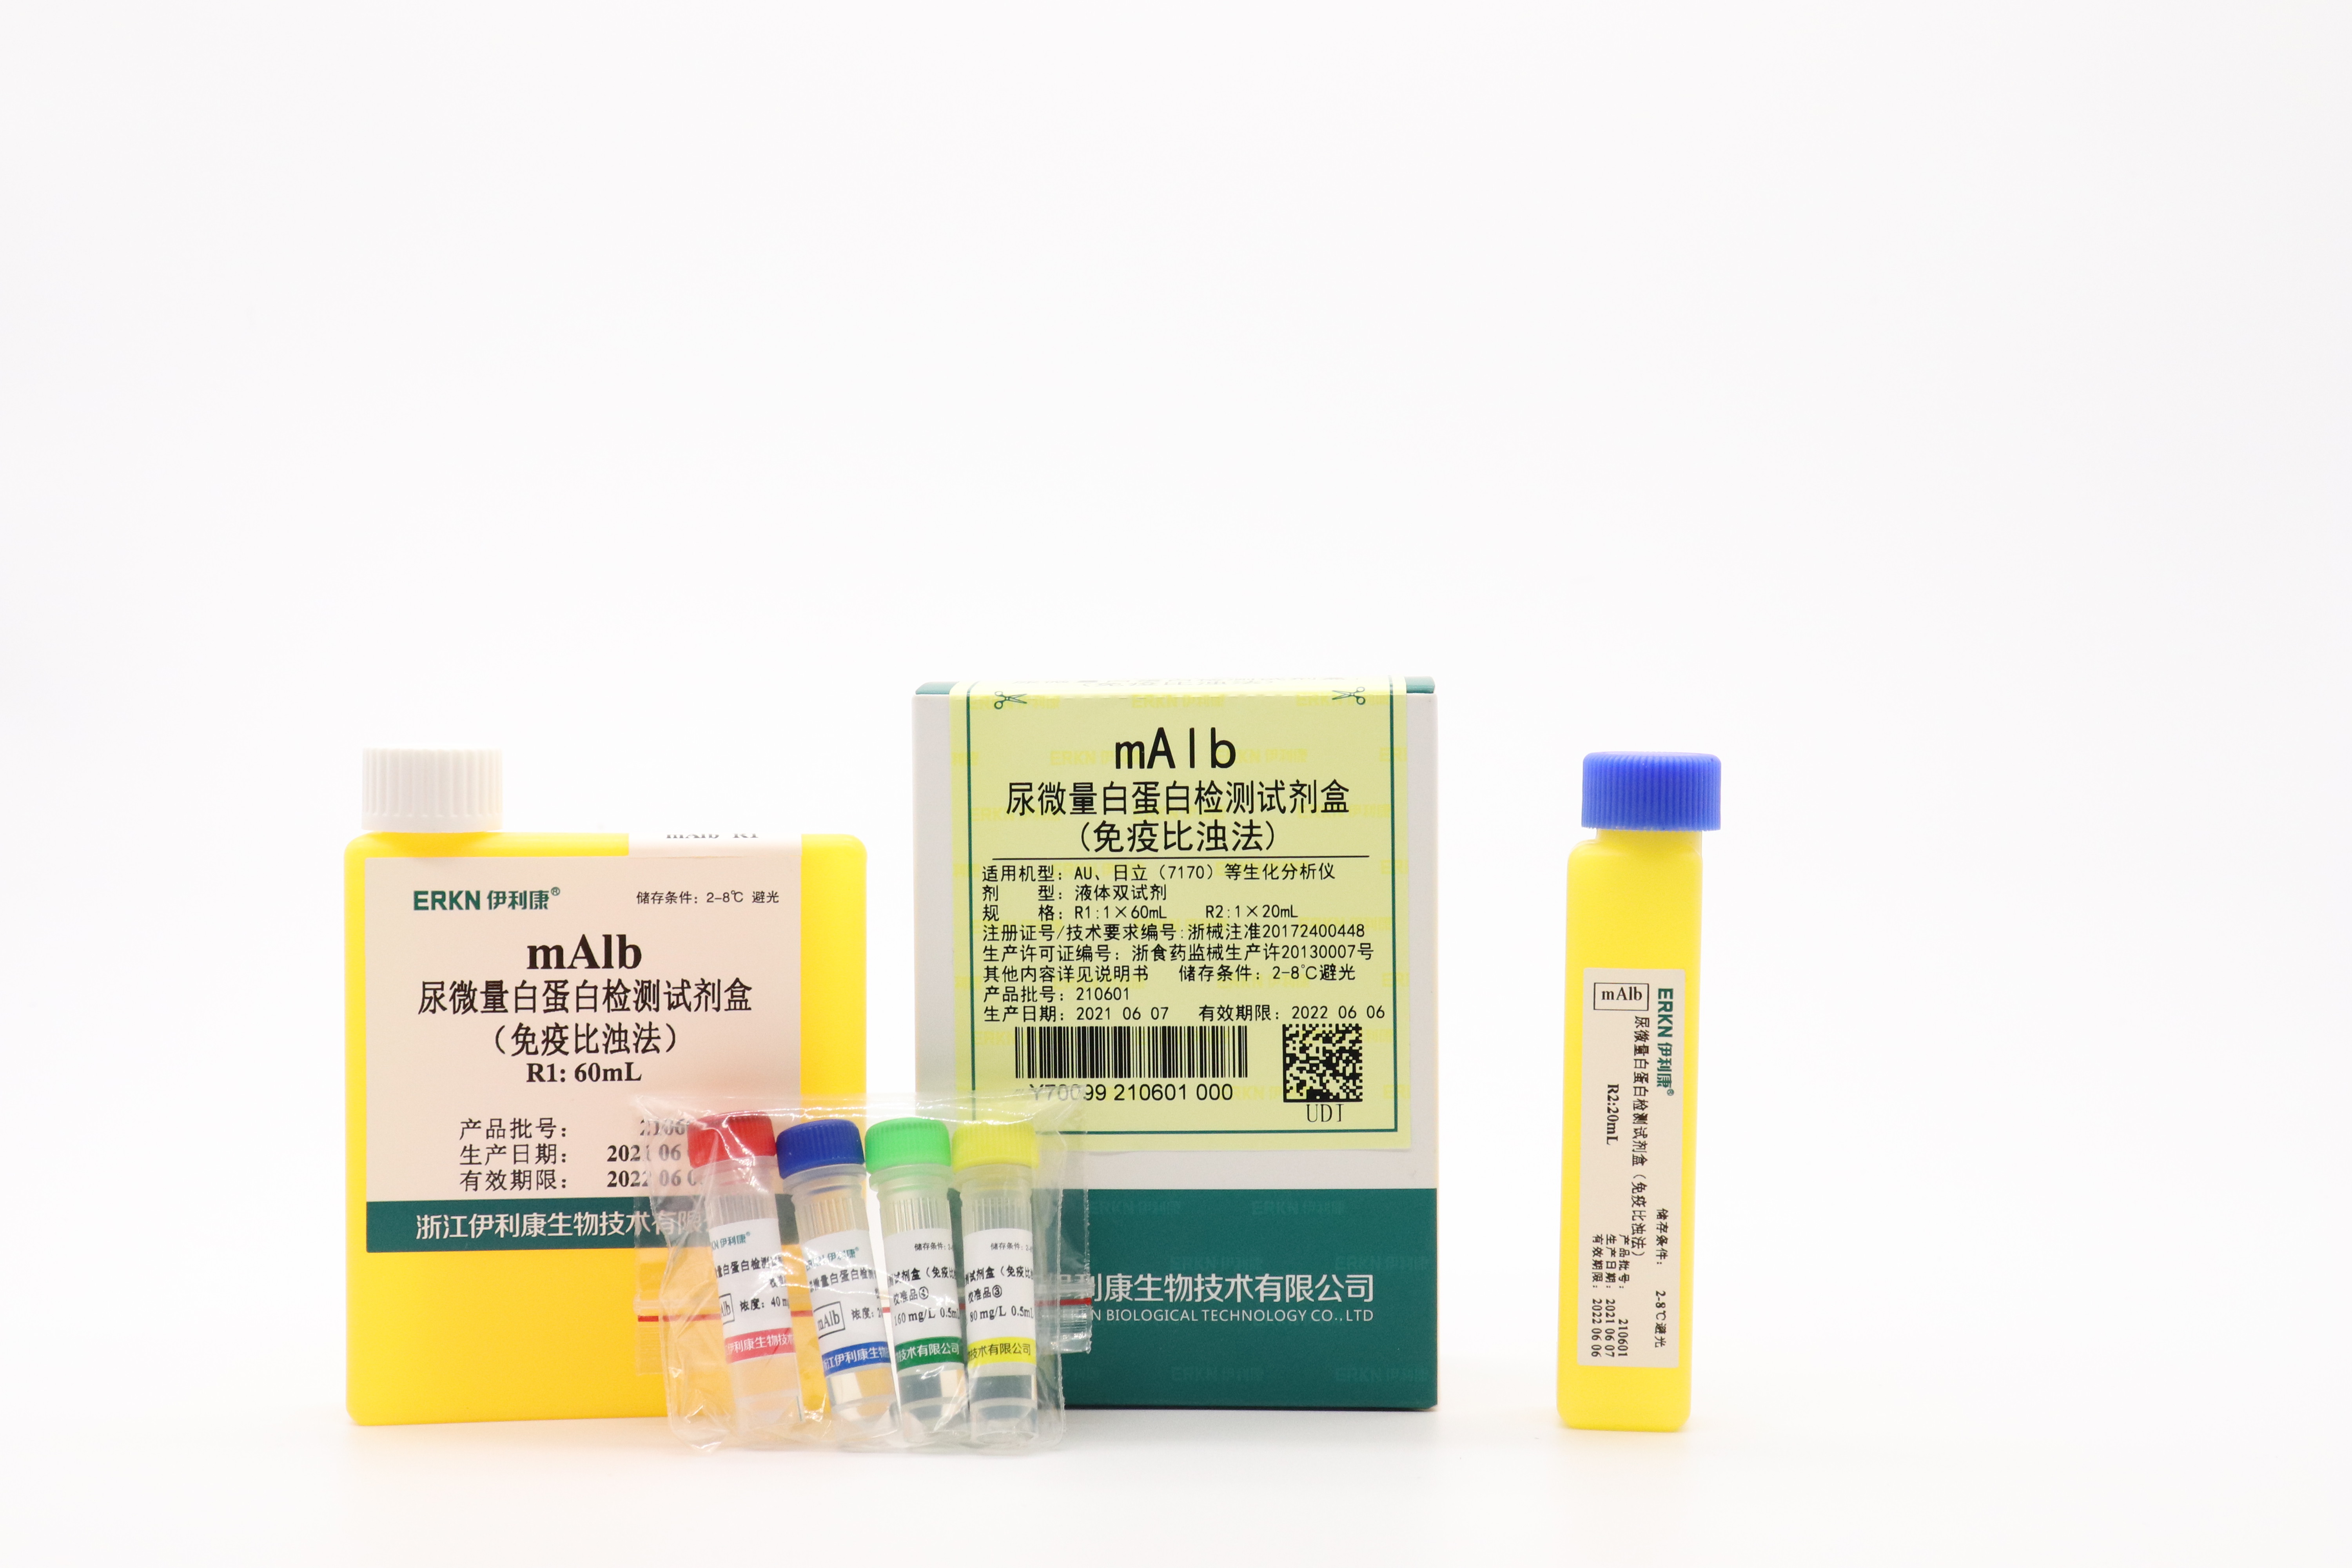 【伊利康】尿微量白蛋白检测试剂盒（免疫比浊法）